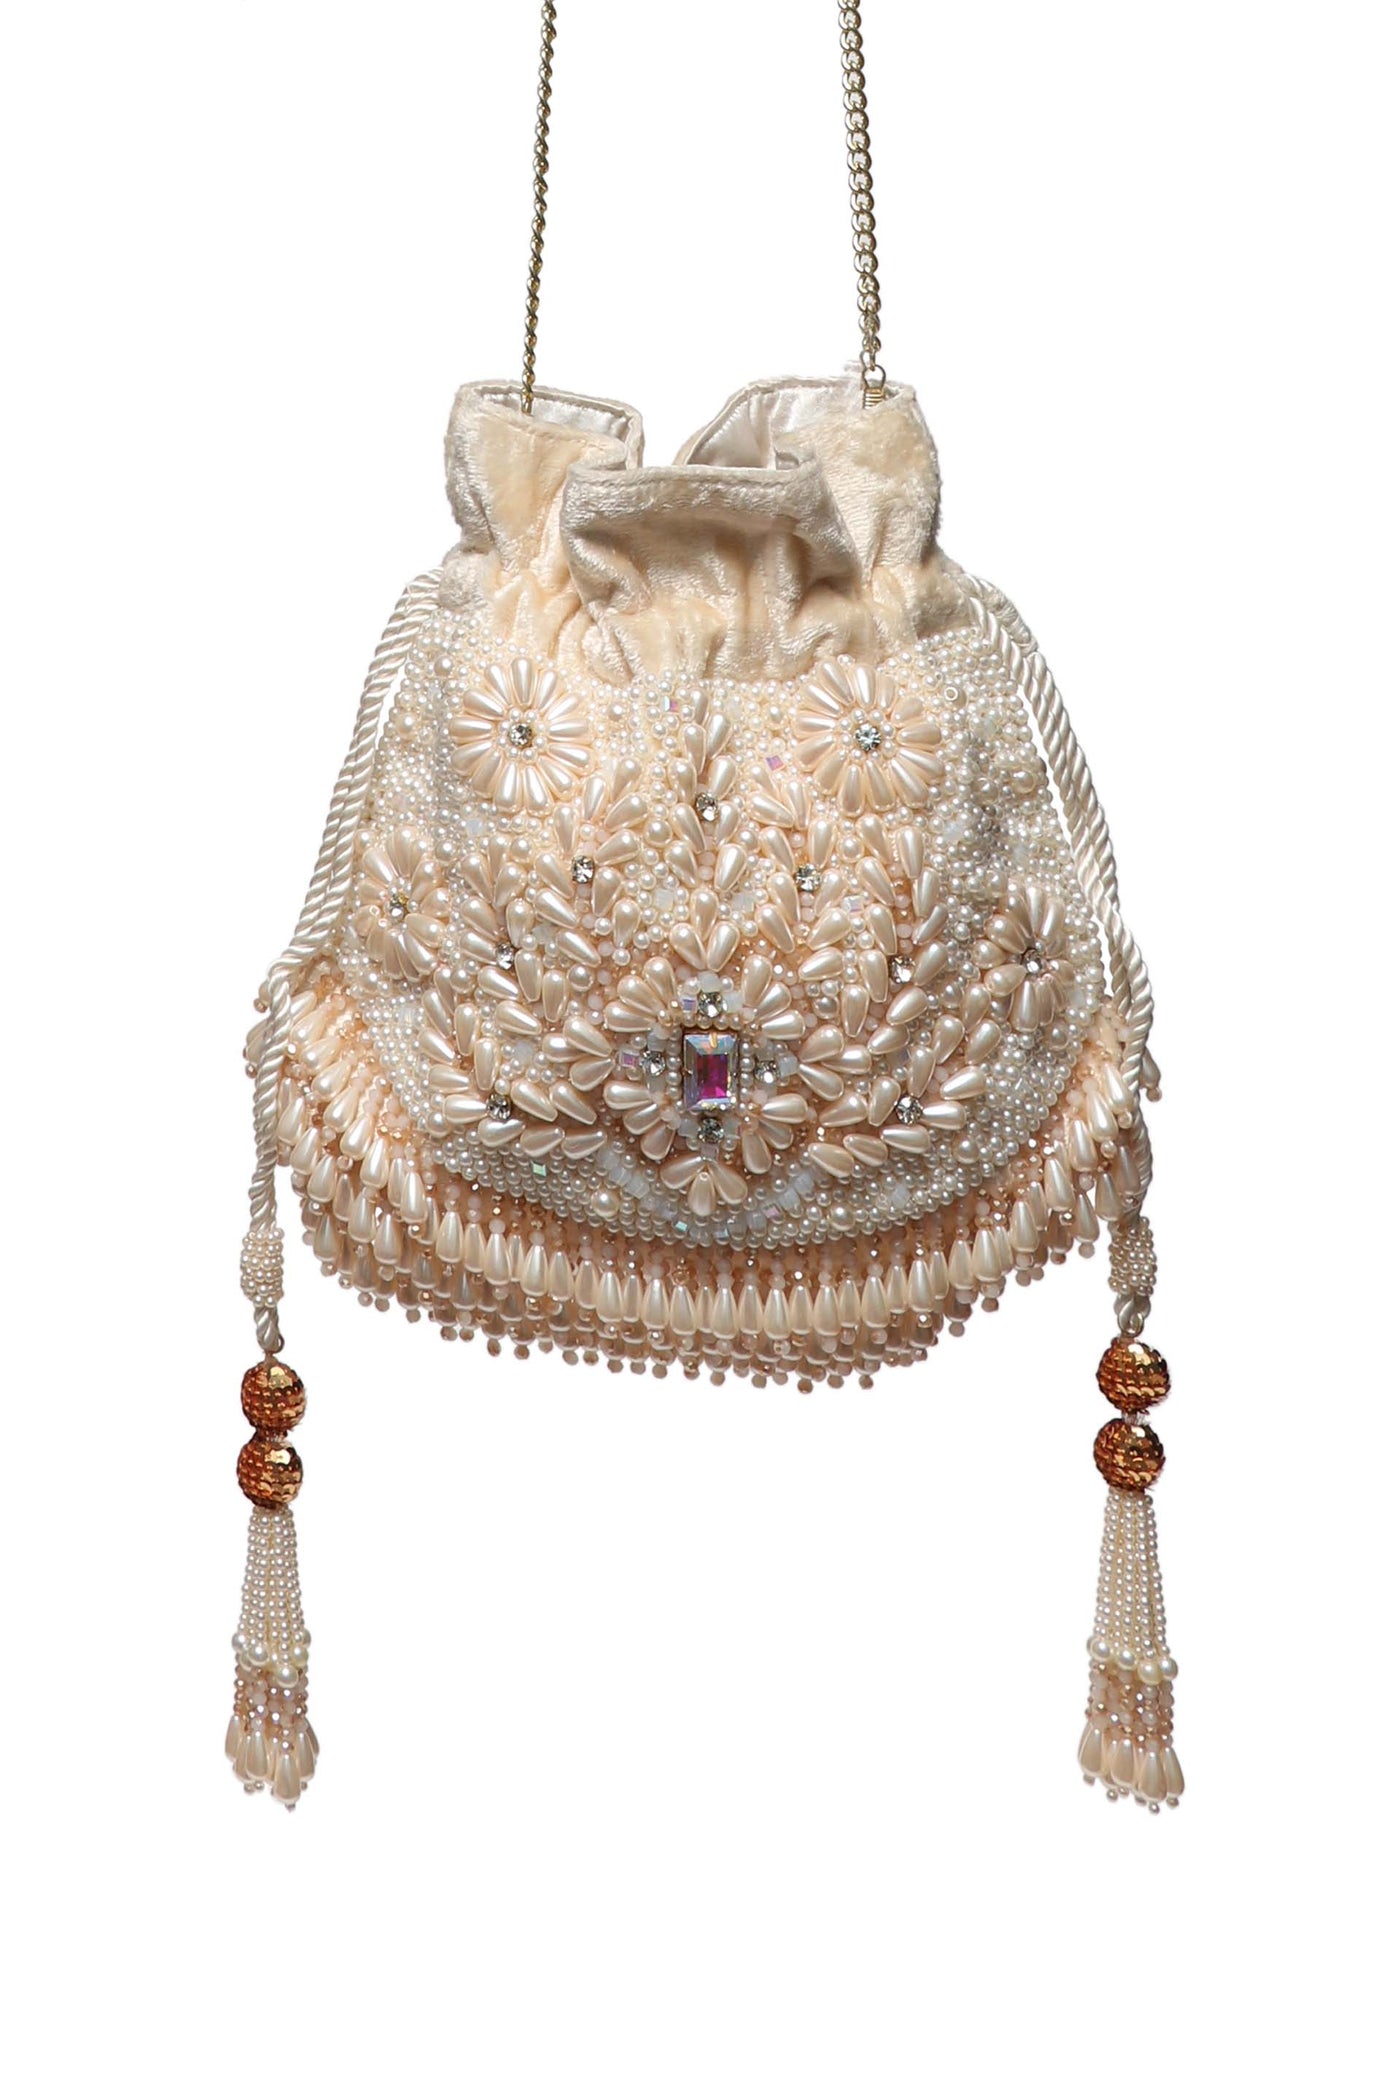 bijoux by priya chandna Pearl Potli in Cream fashion accessories online shopping melange singapore indian designer wear